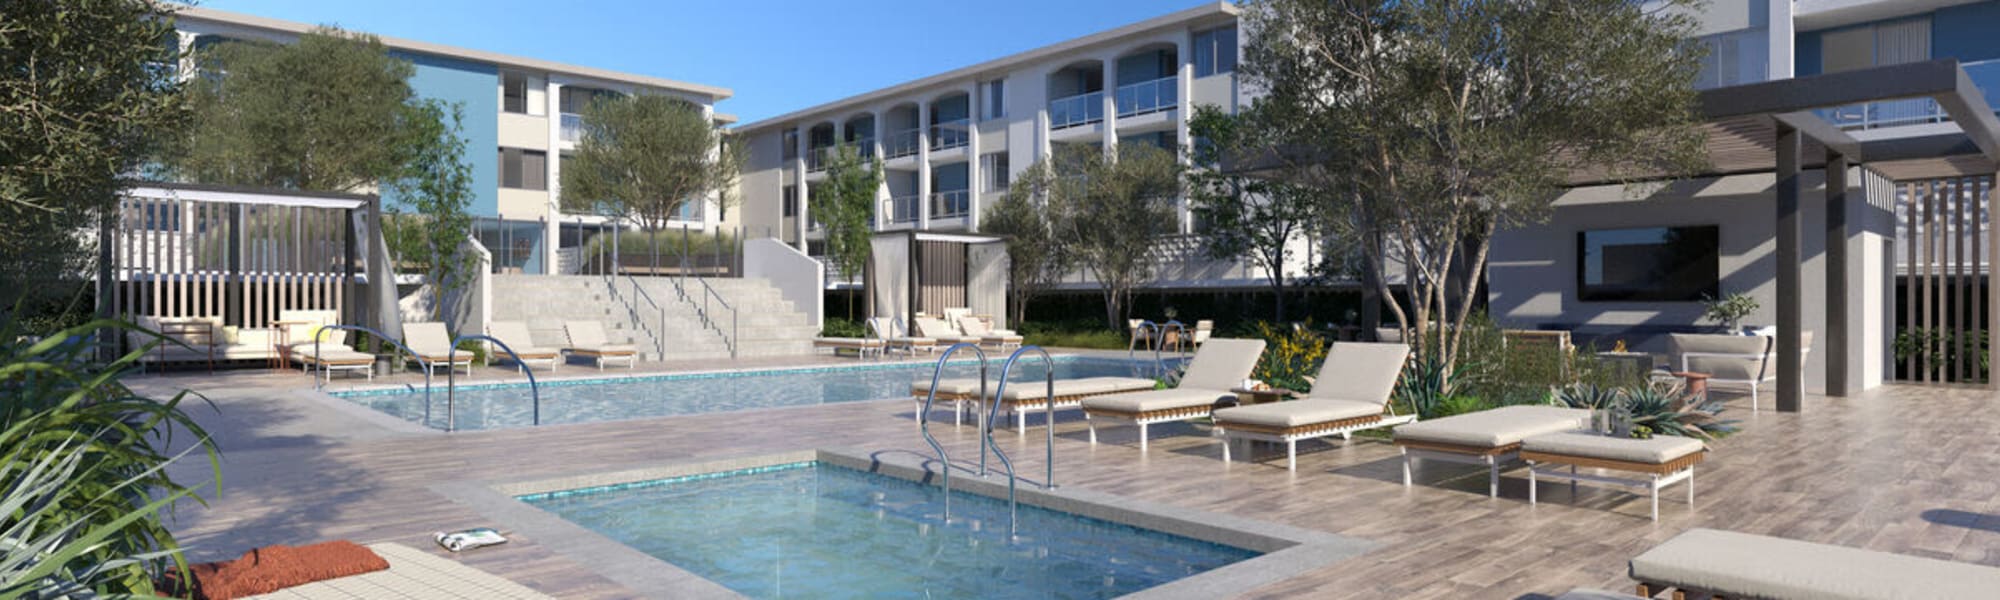 Apply at Dolphin Marina Apartments in Marina Del Rey, California  